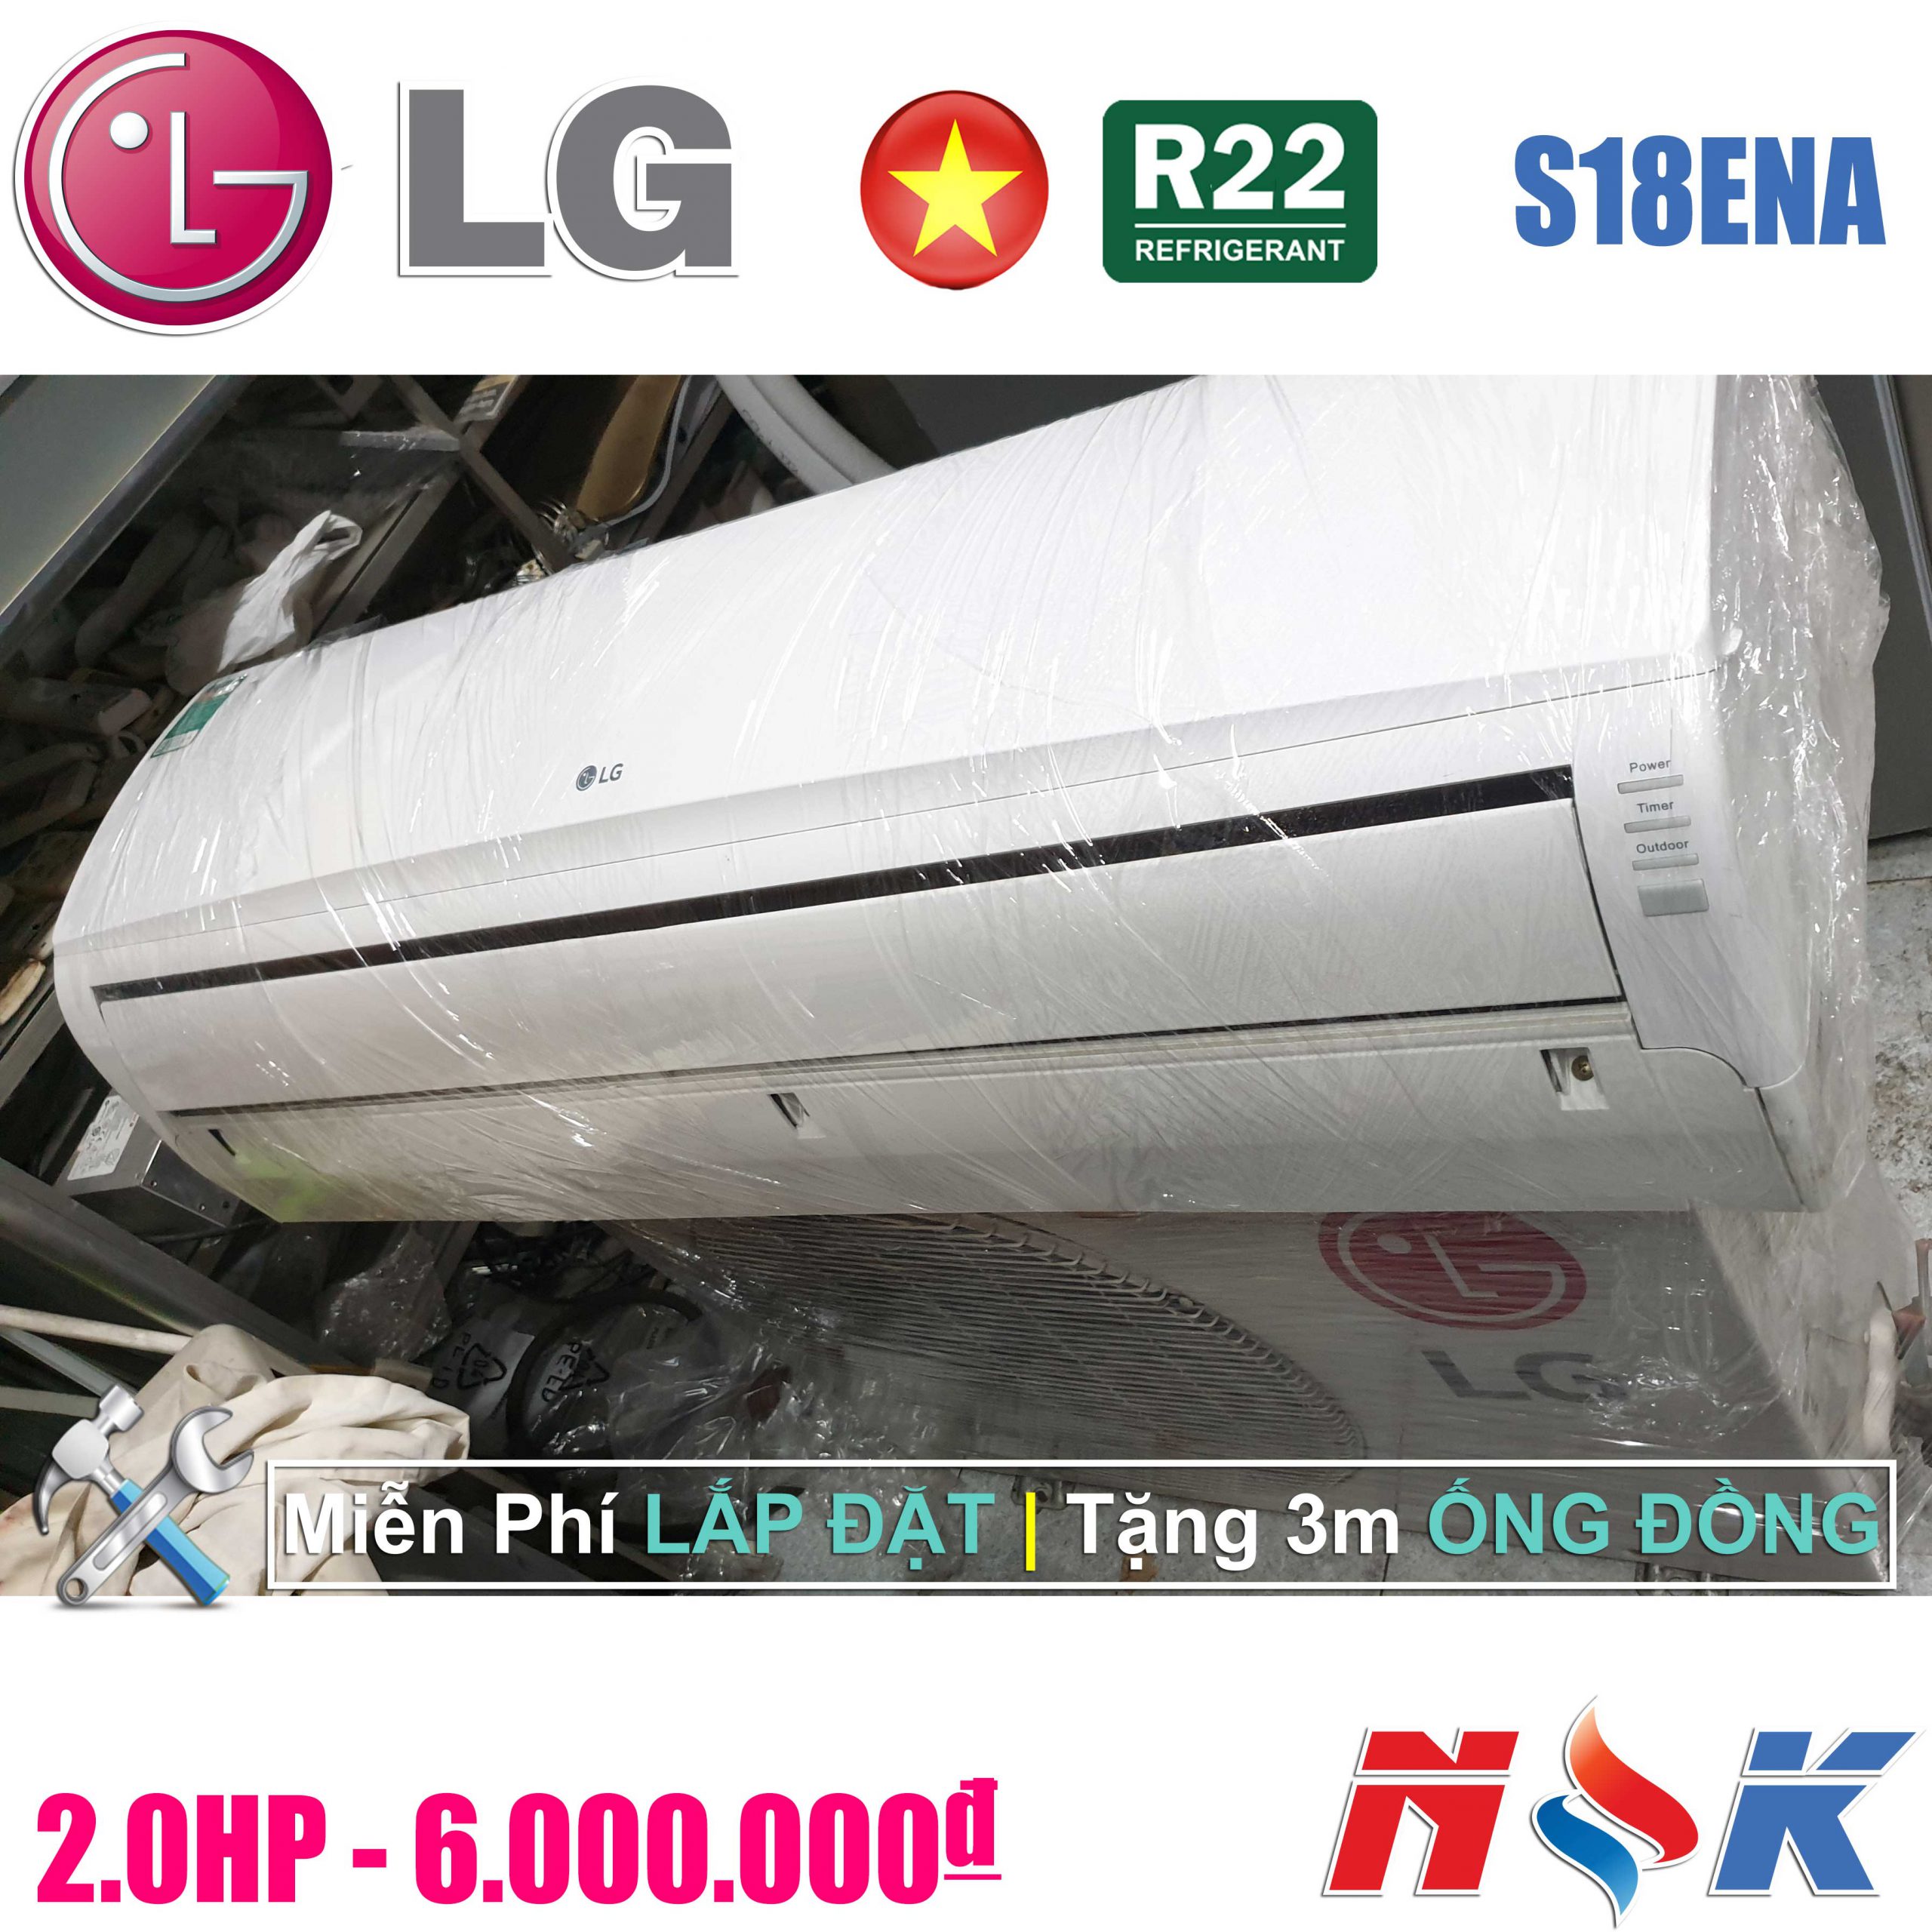 Máy lạnh LG S18ENA 2HP